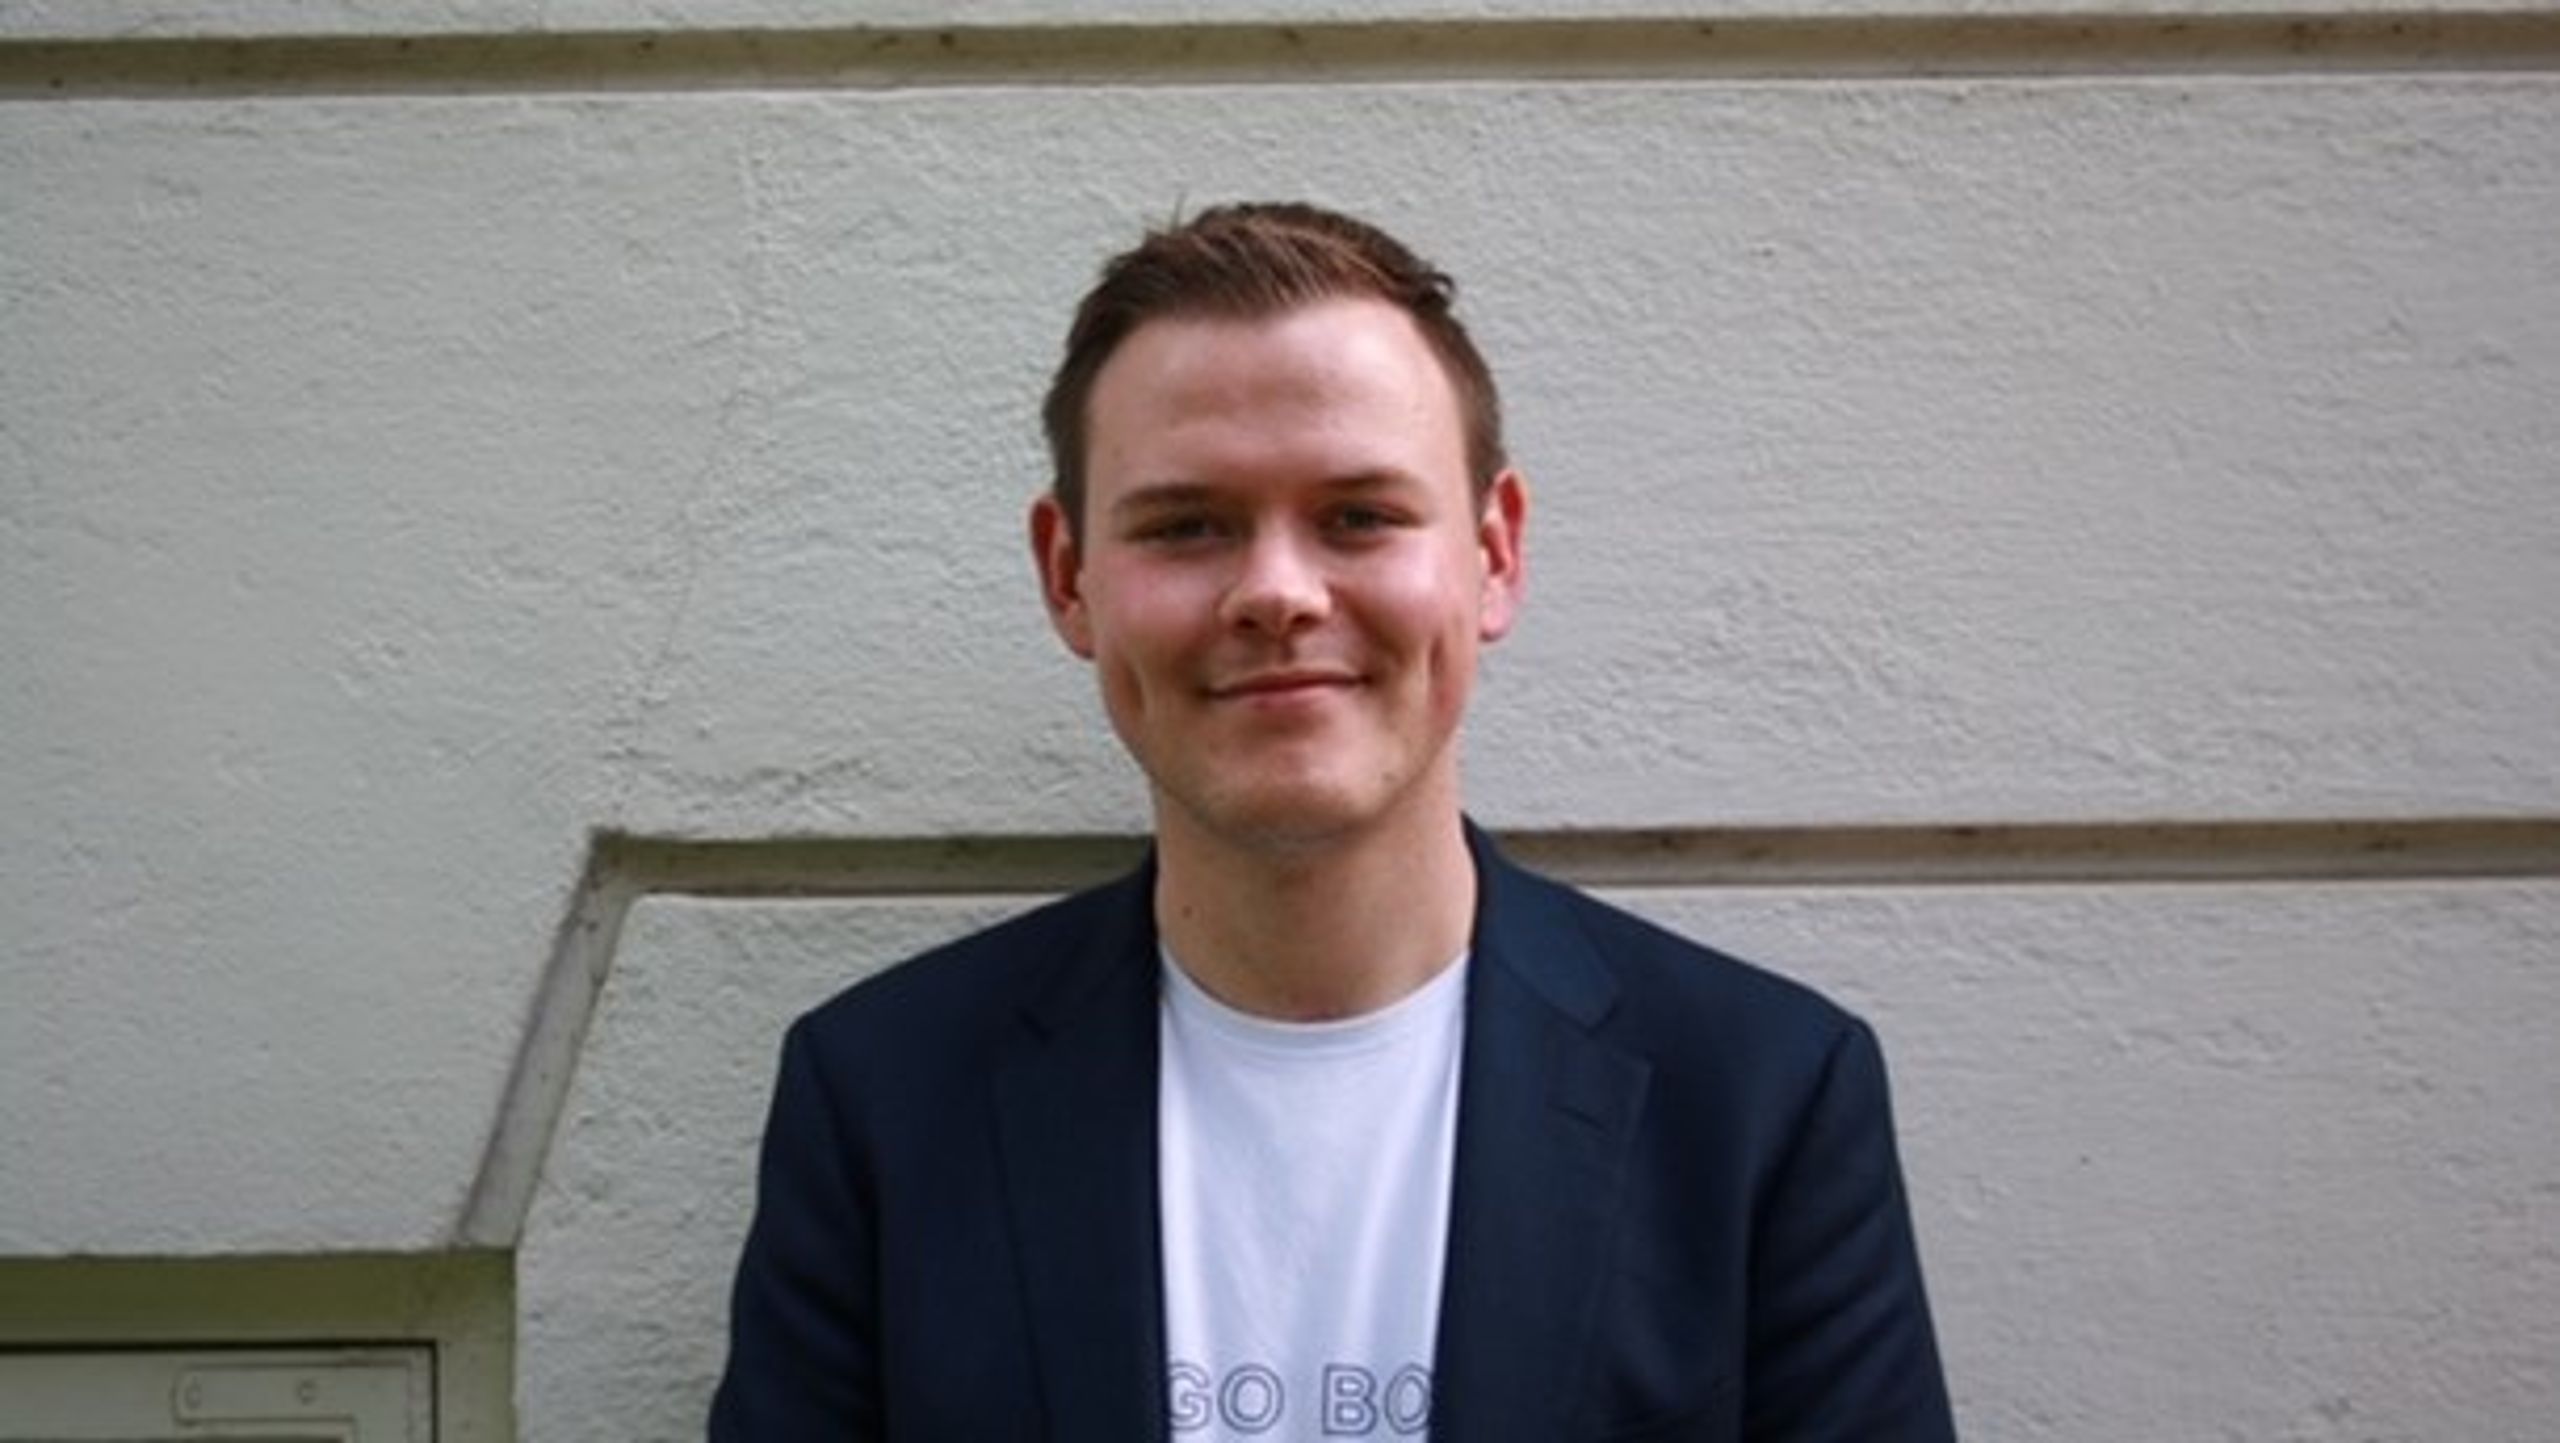 Efter at have overtaget posten fra Kasper Sand Kjær, der blev valgt til Folketinget, er Chris Preuss nu også blevet valgt som formand ved delegeretmødet i Dansk Ungdoms Fællesråd.